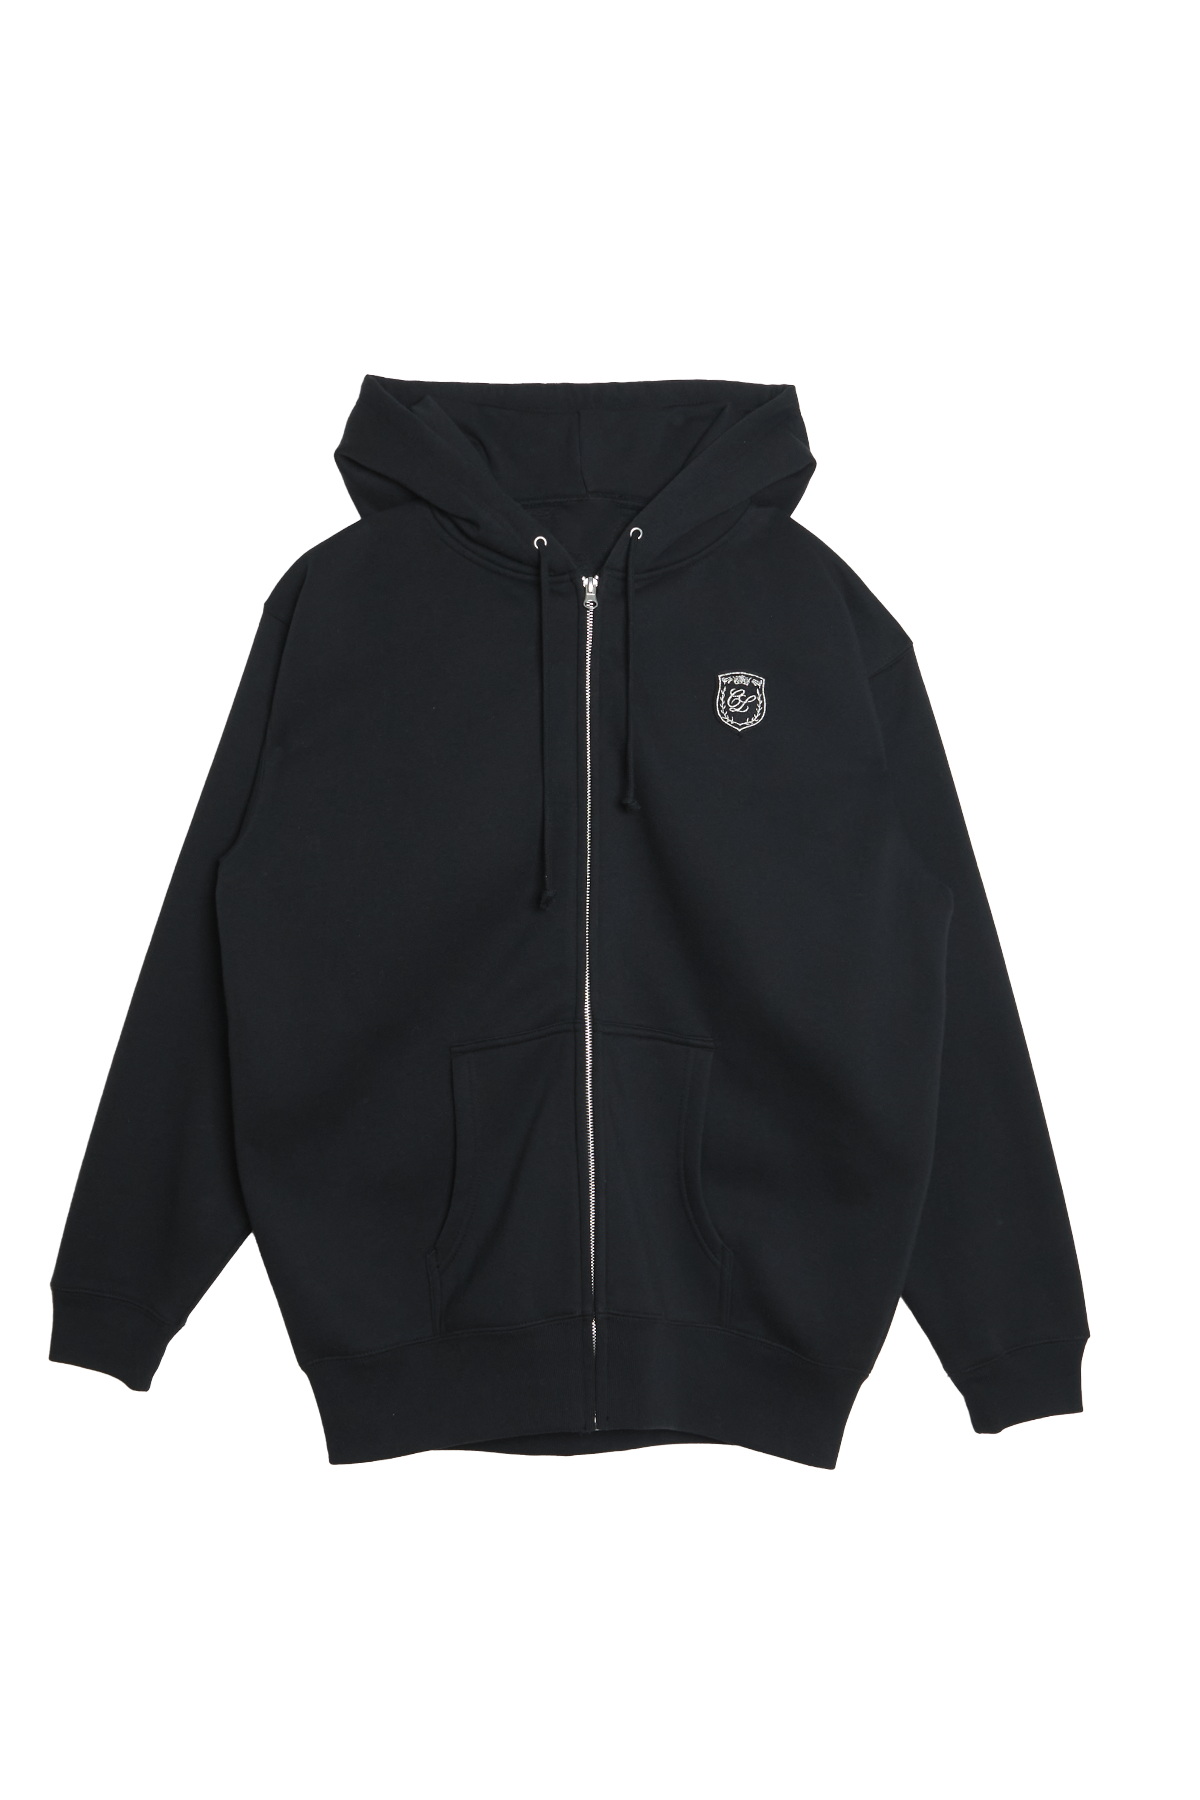 Emblem zip up hoodie